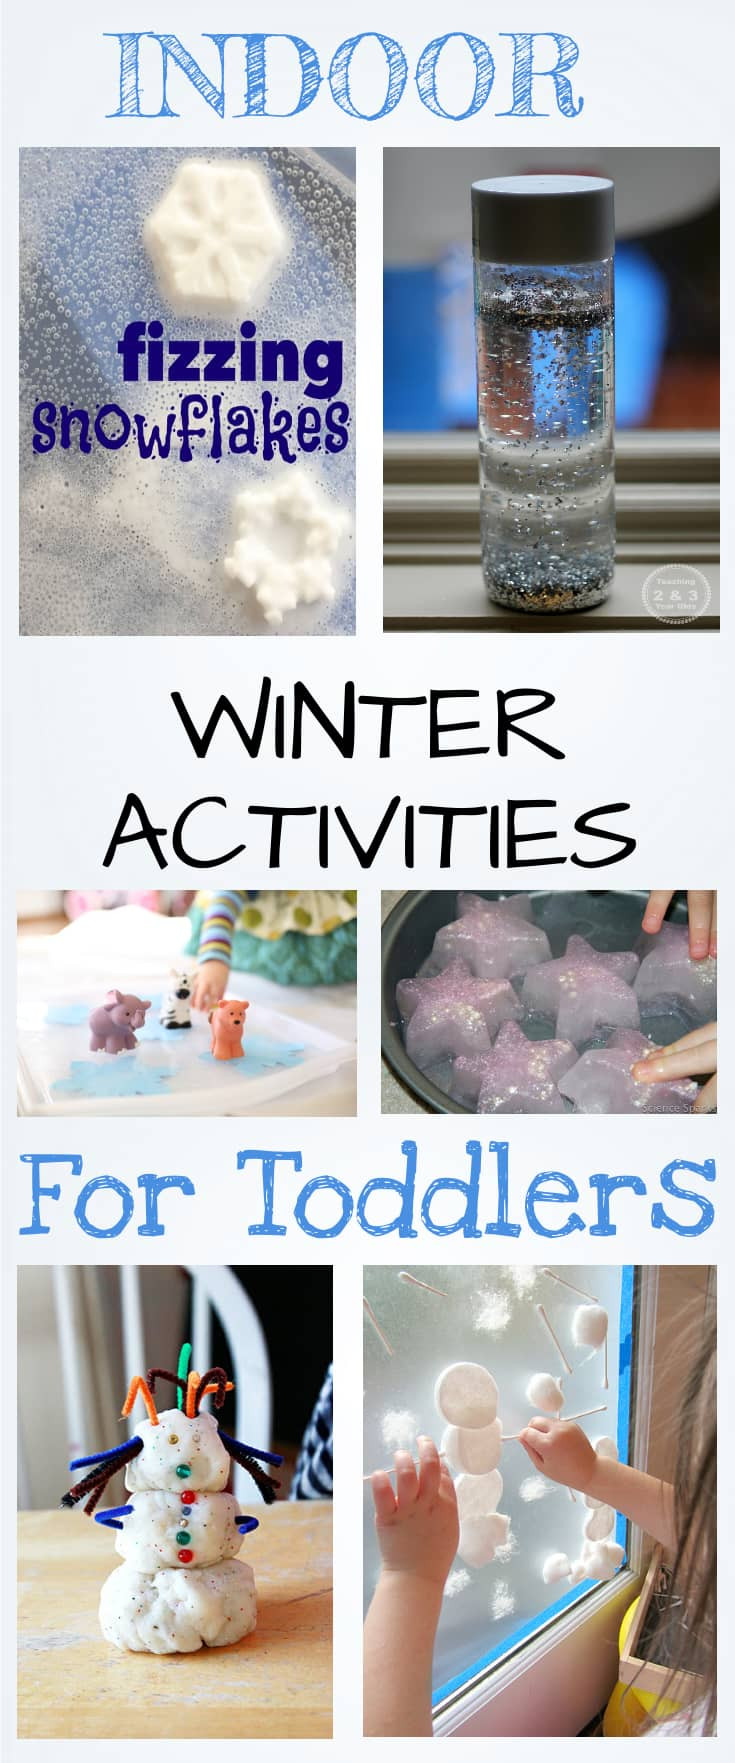 Indoor Winter Activities For Toddlers
 Indoor Winter Activities for Toddlers lowcostplayground